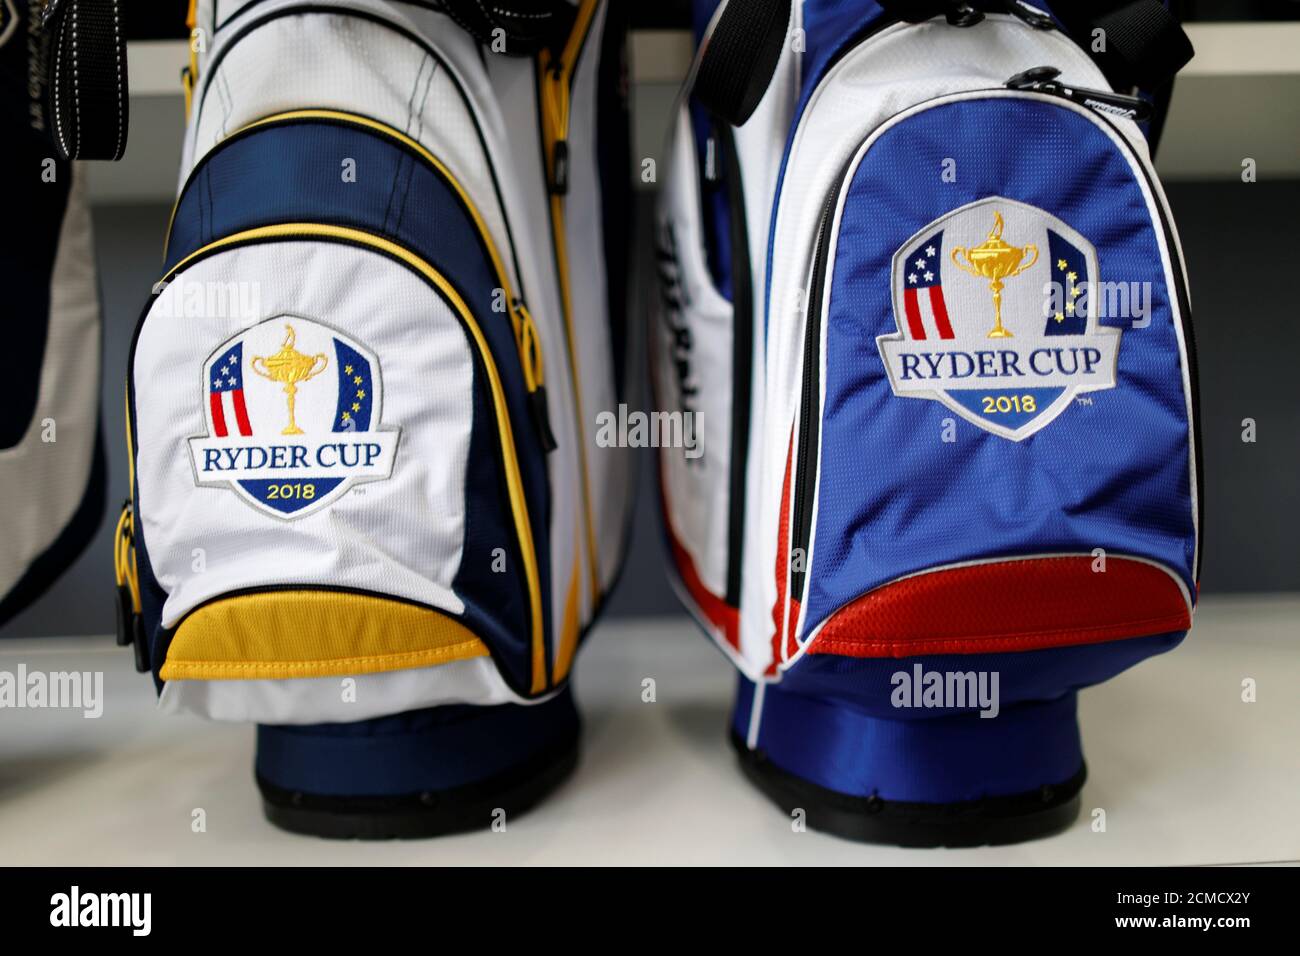 Las bolsas con el logo de la Ryder Cup 2018 se exhiben para la venta en el  Golf National de Francia, donde el torneo de la Ryder Cup 2018 se llevará a